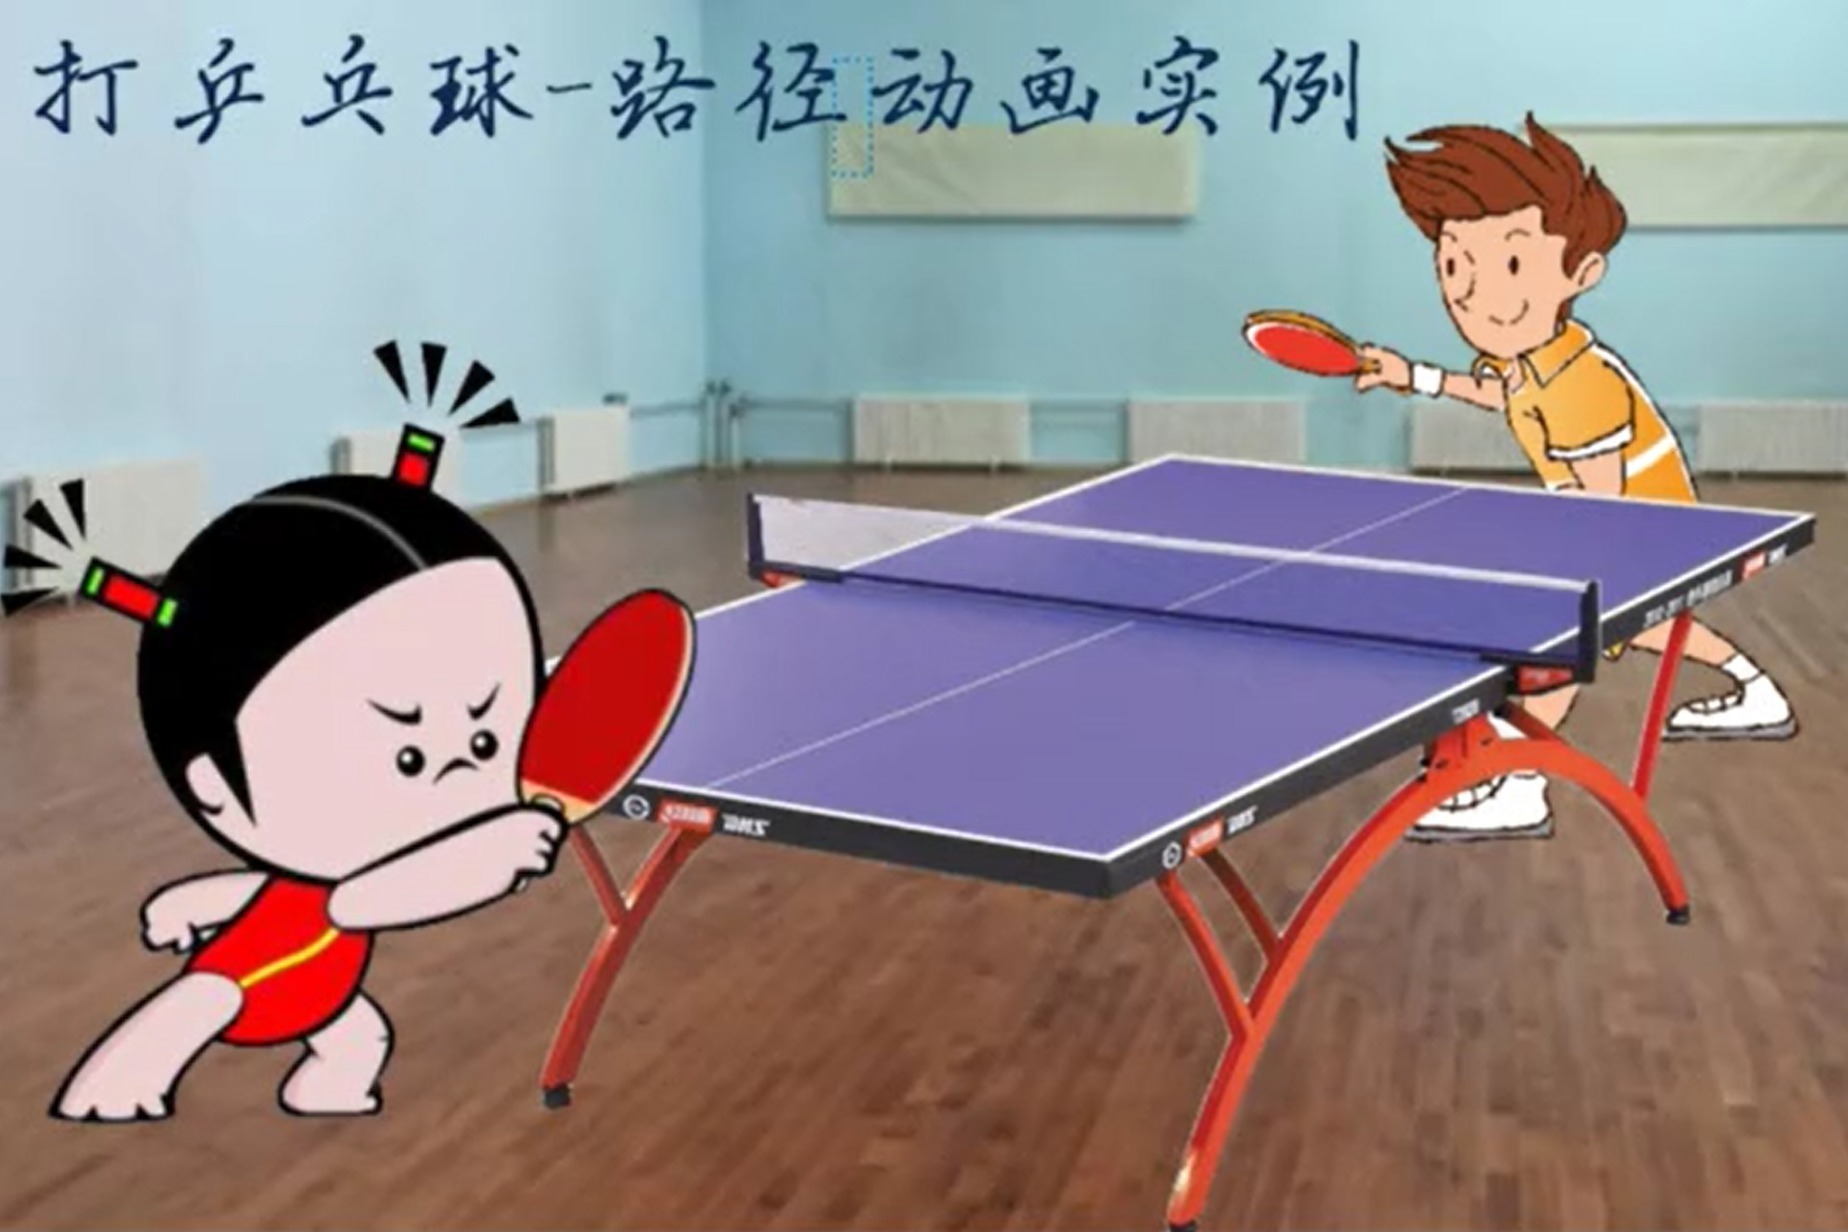 打乒乓球,希沃白板5路径动画实例,炫技吗?